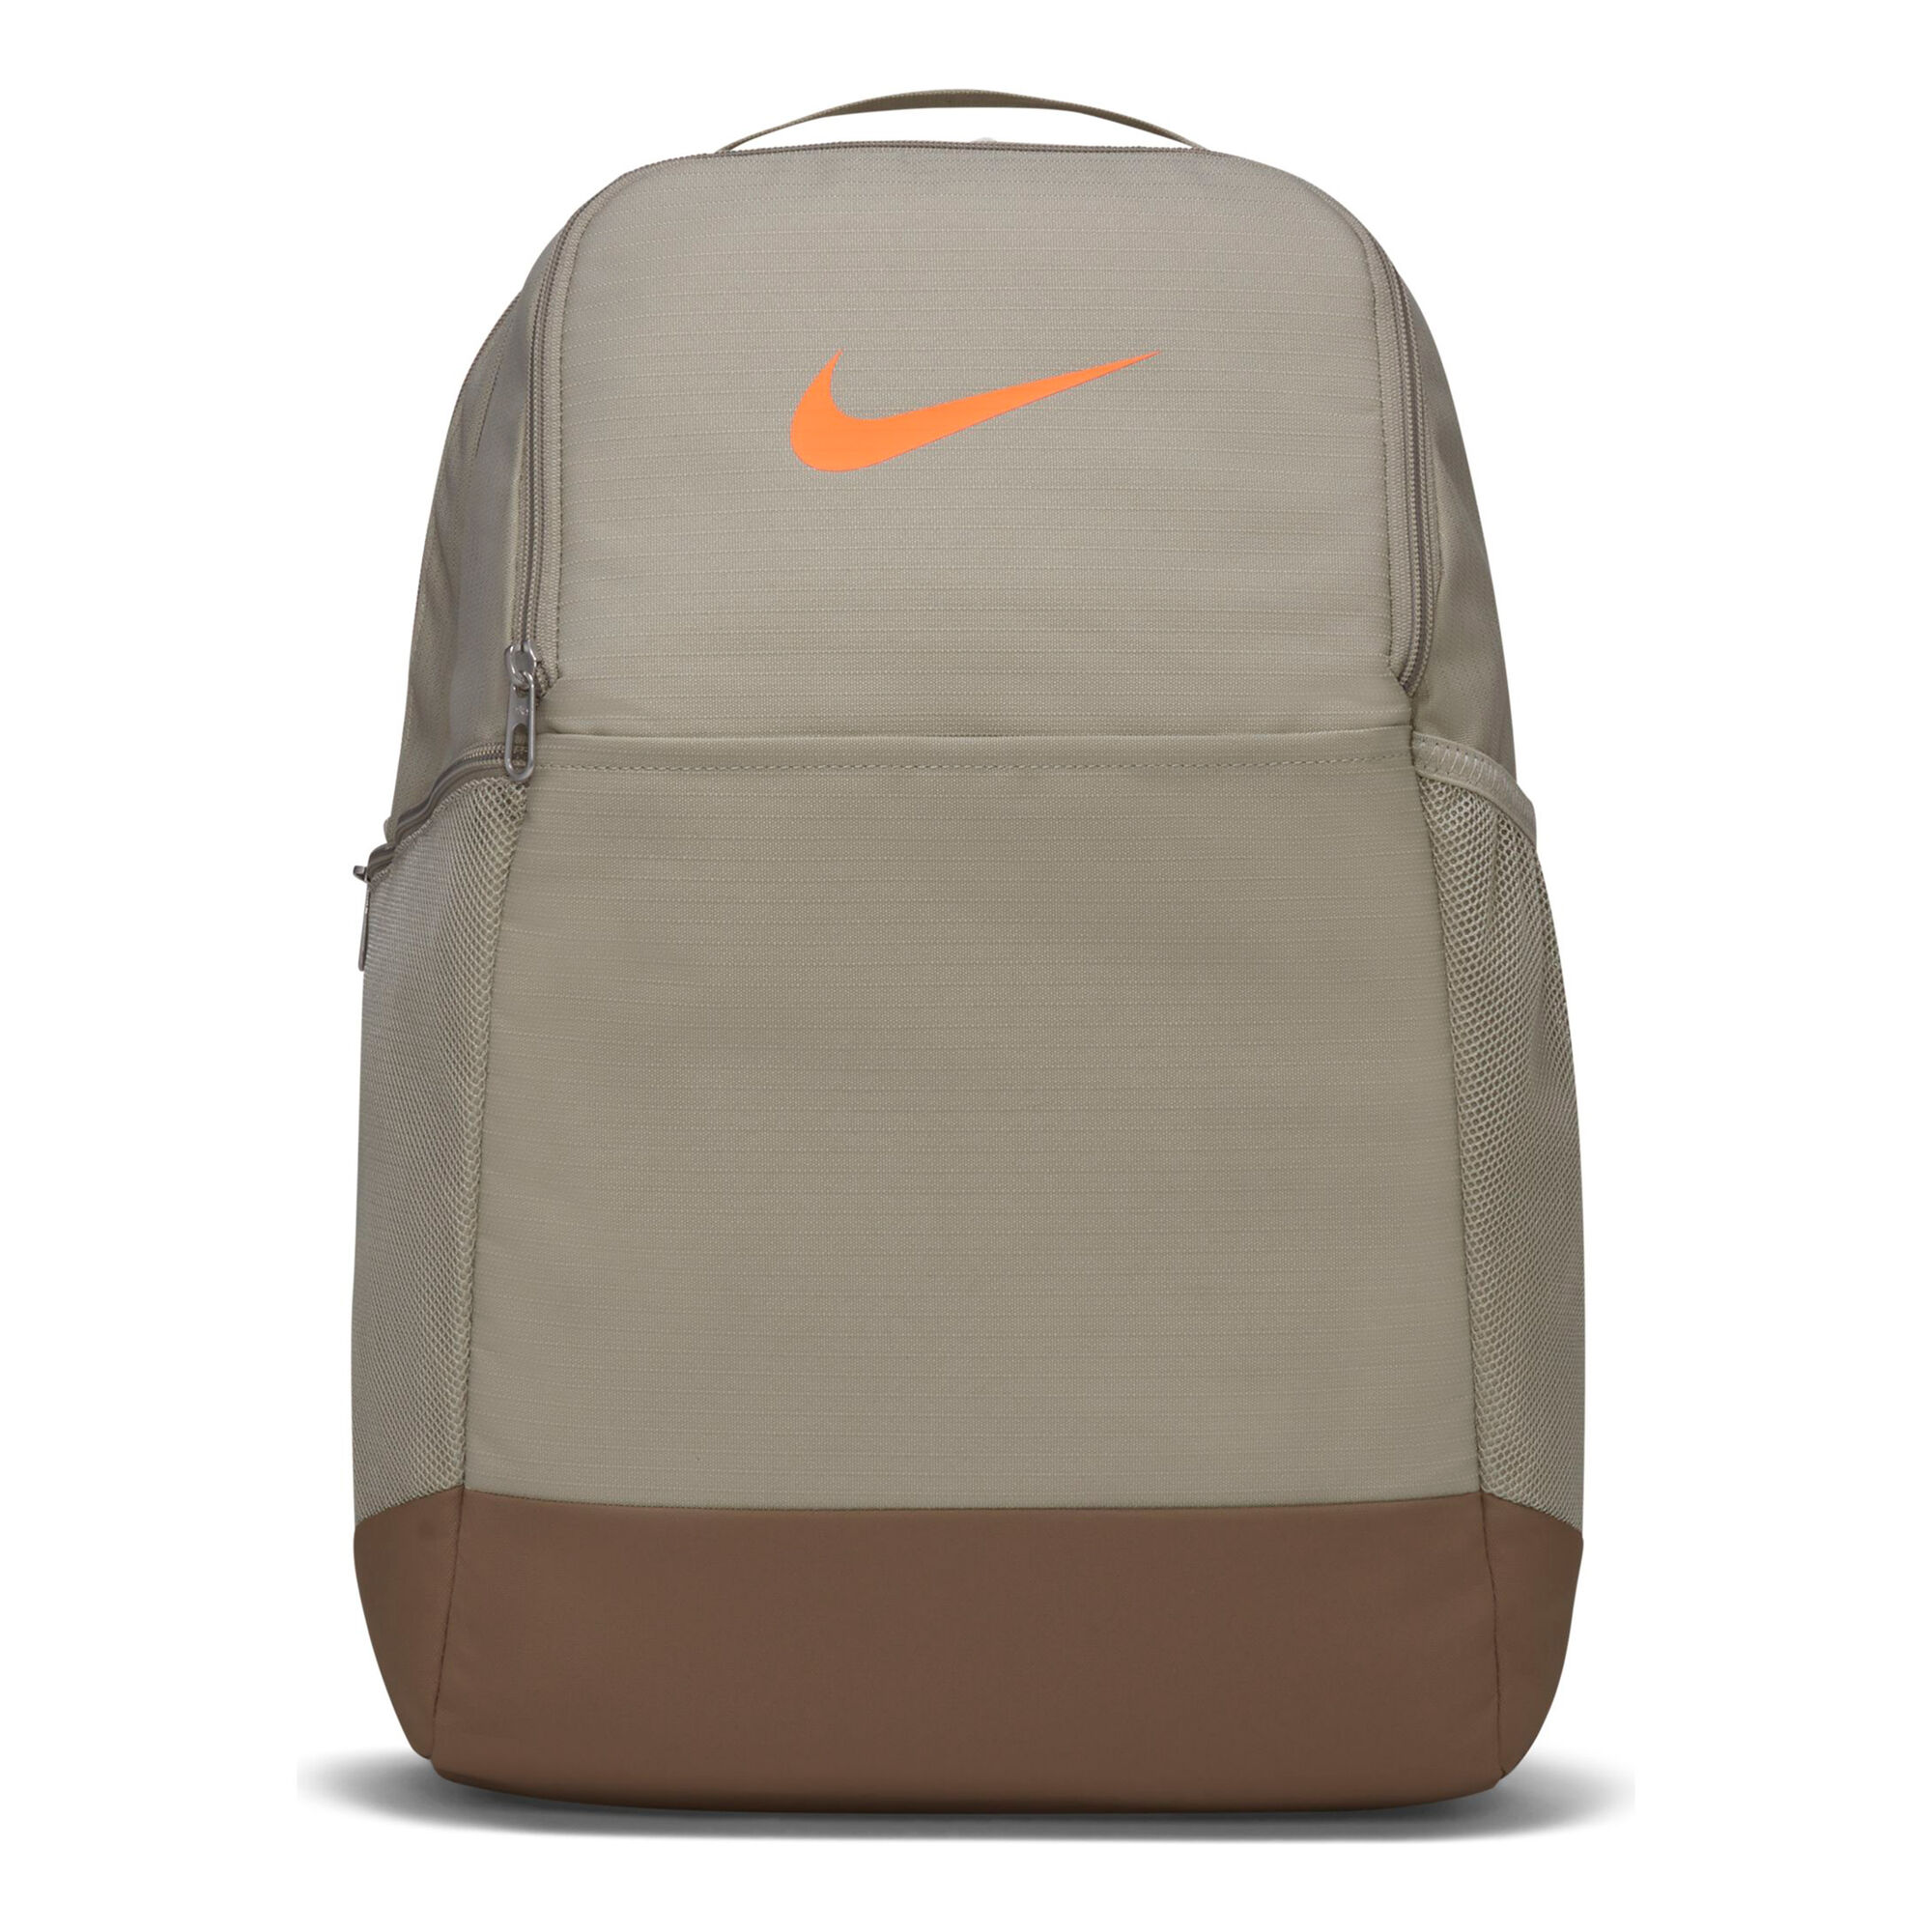 Buy Nike Brasilia Medium Backpack Beige, Orange online